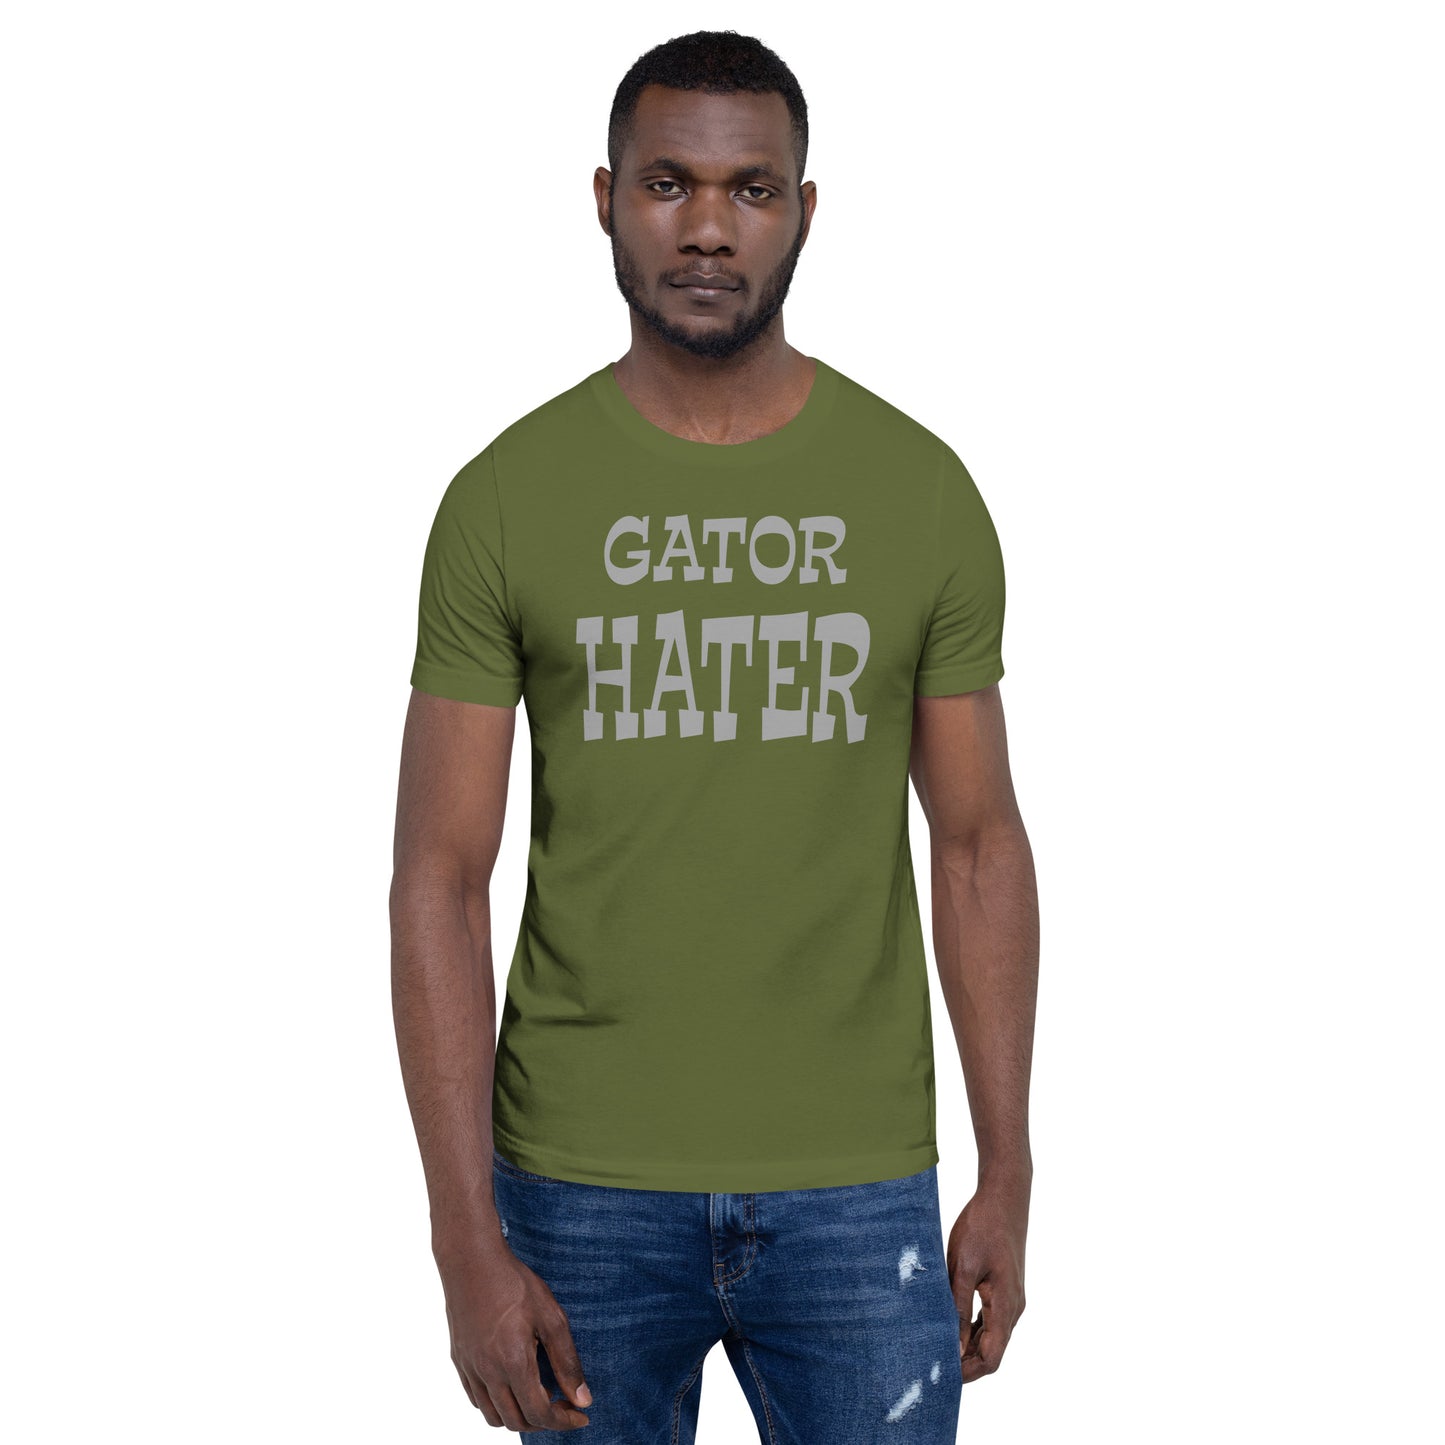 Gator Hater DarkGray Logo Unisex t-shirt Plus Sizes